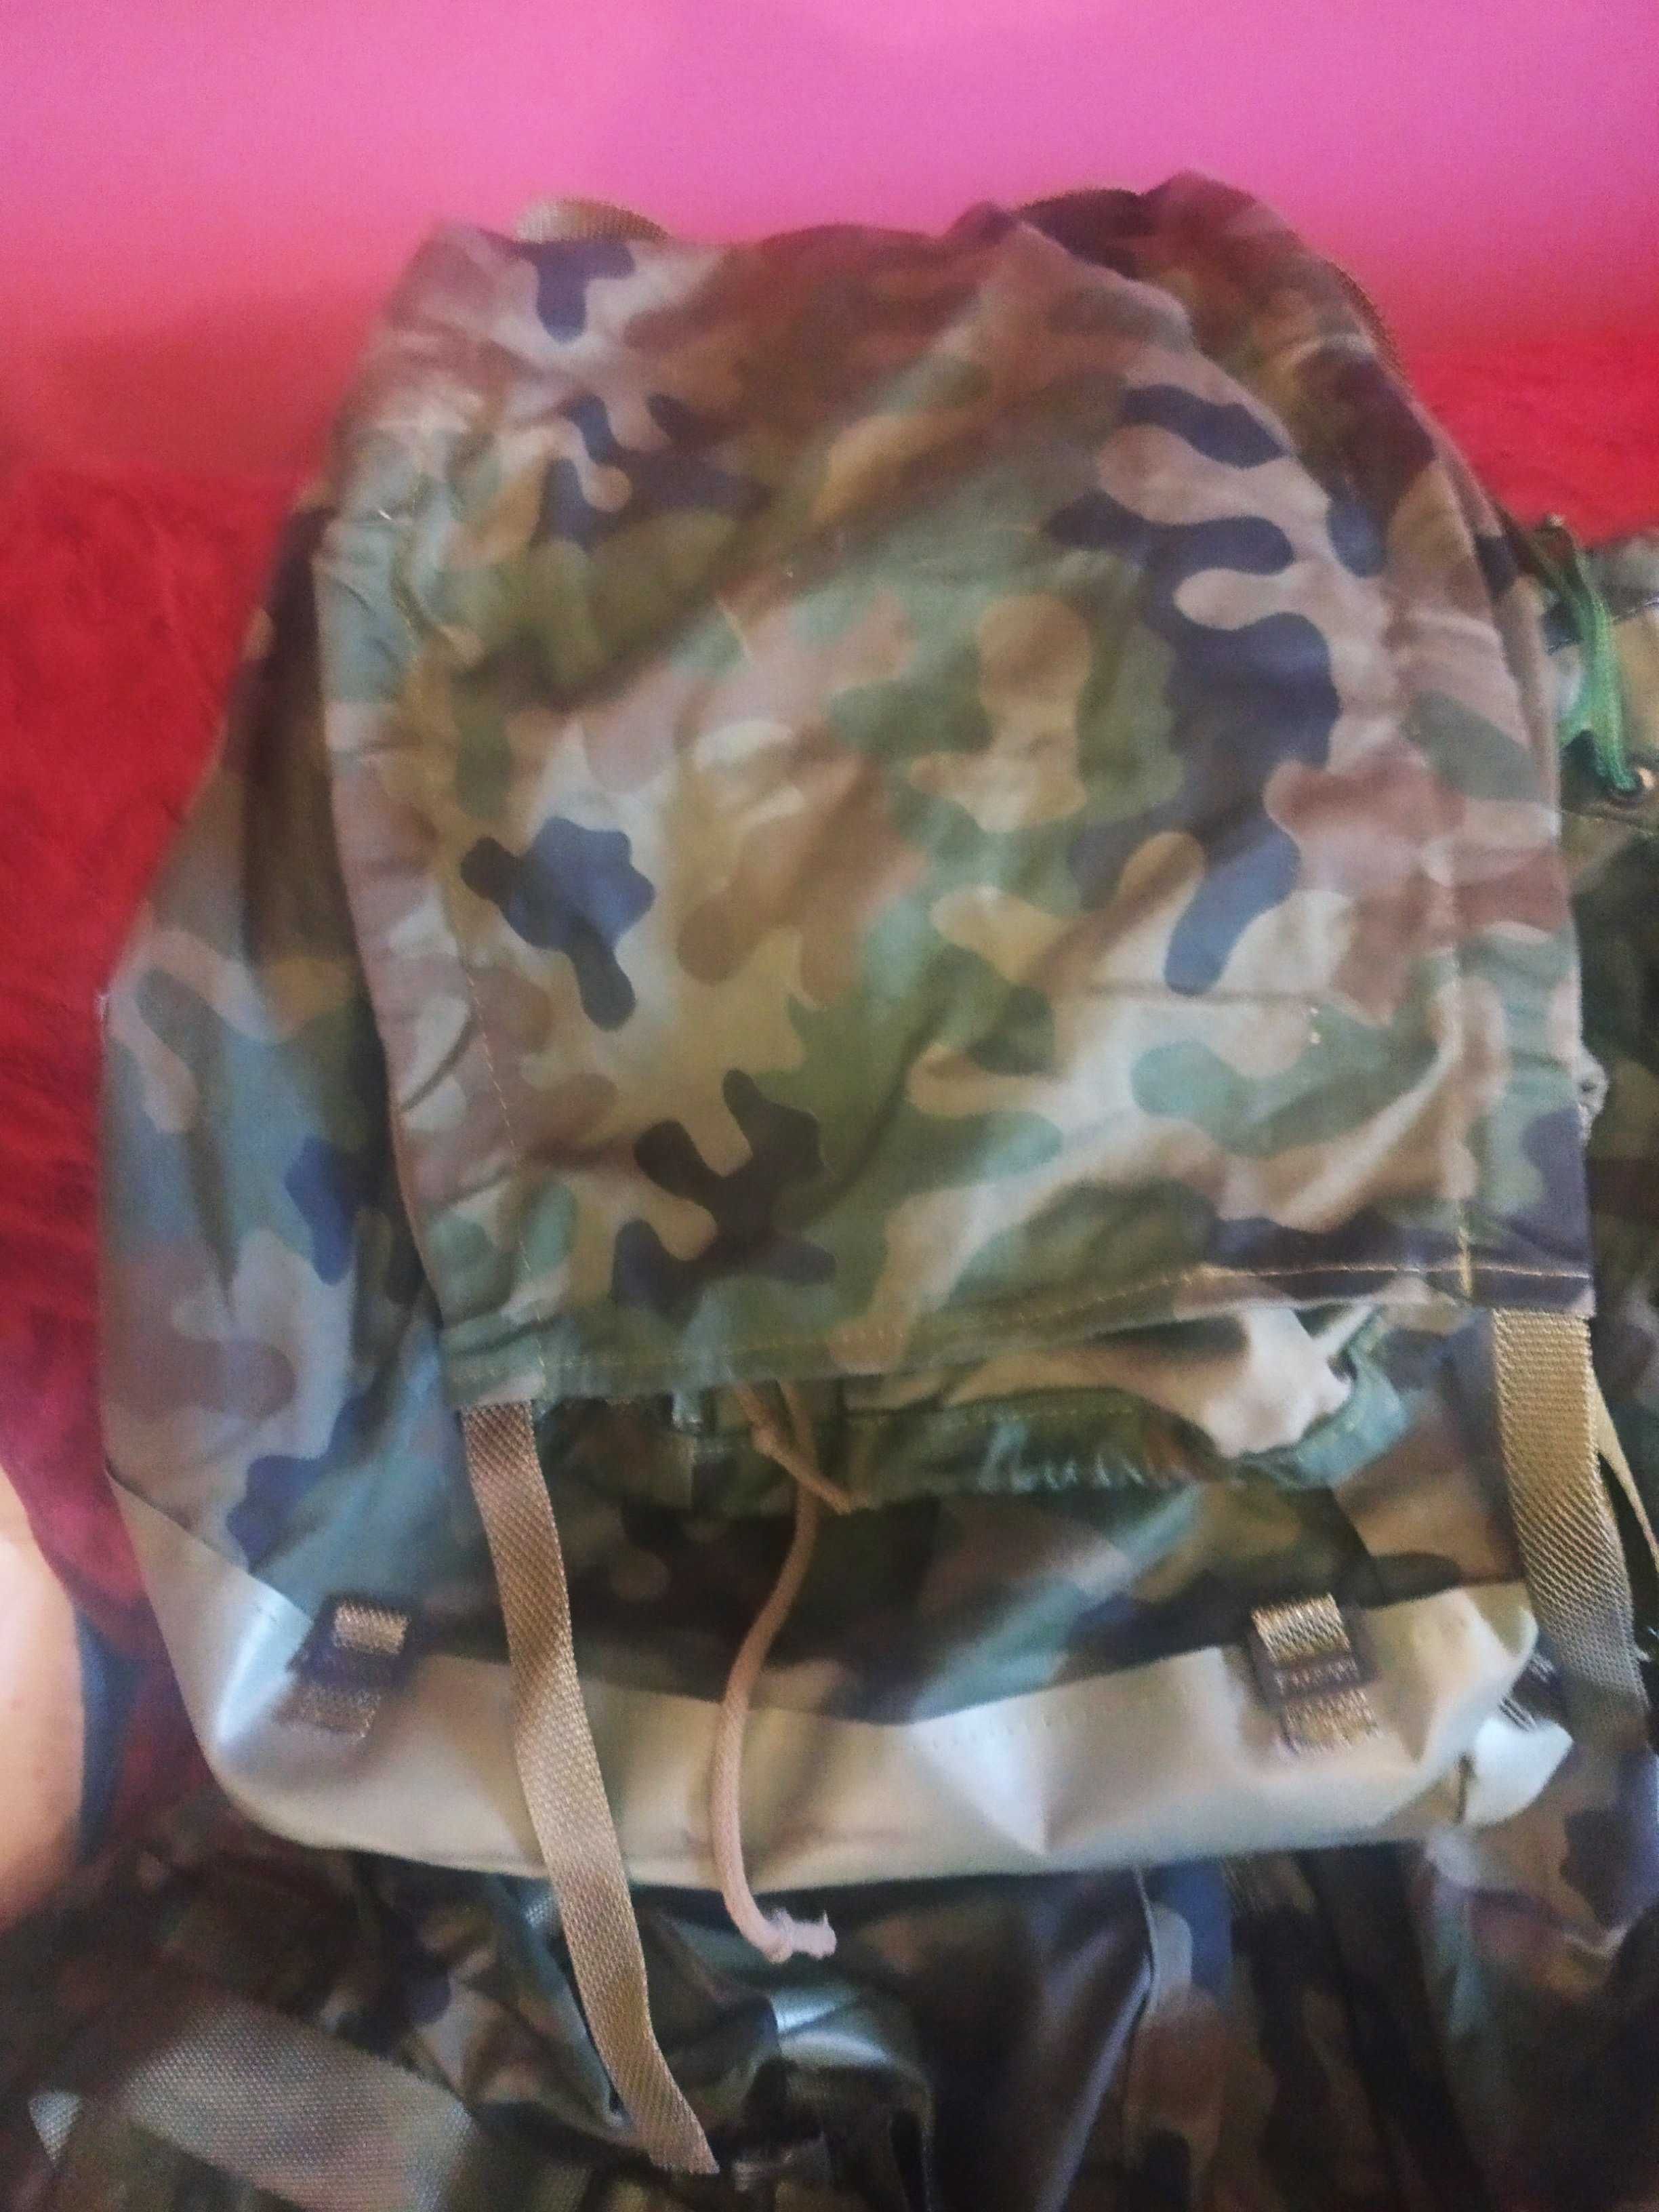 Plecak wojskowy bardzo pakowny